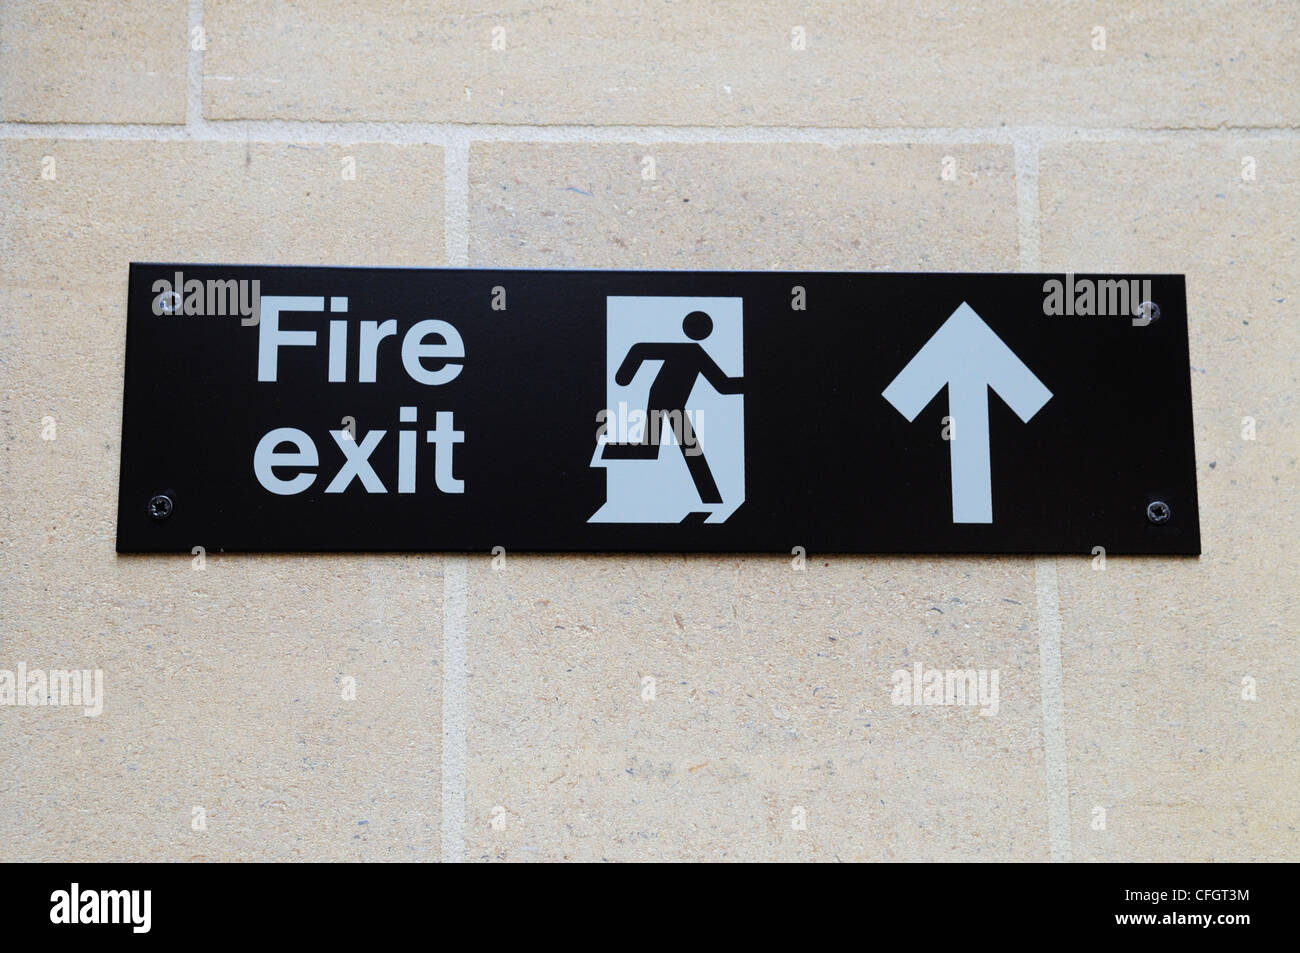 Fire Exit segno, Cambridge, Inghilterra, Regno Unito Foto Stock